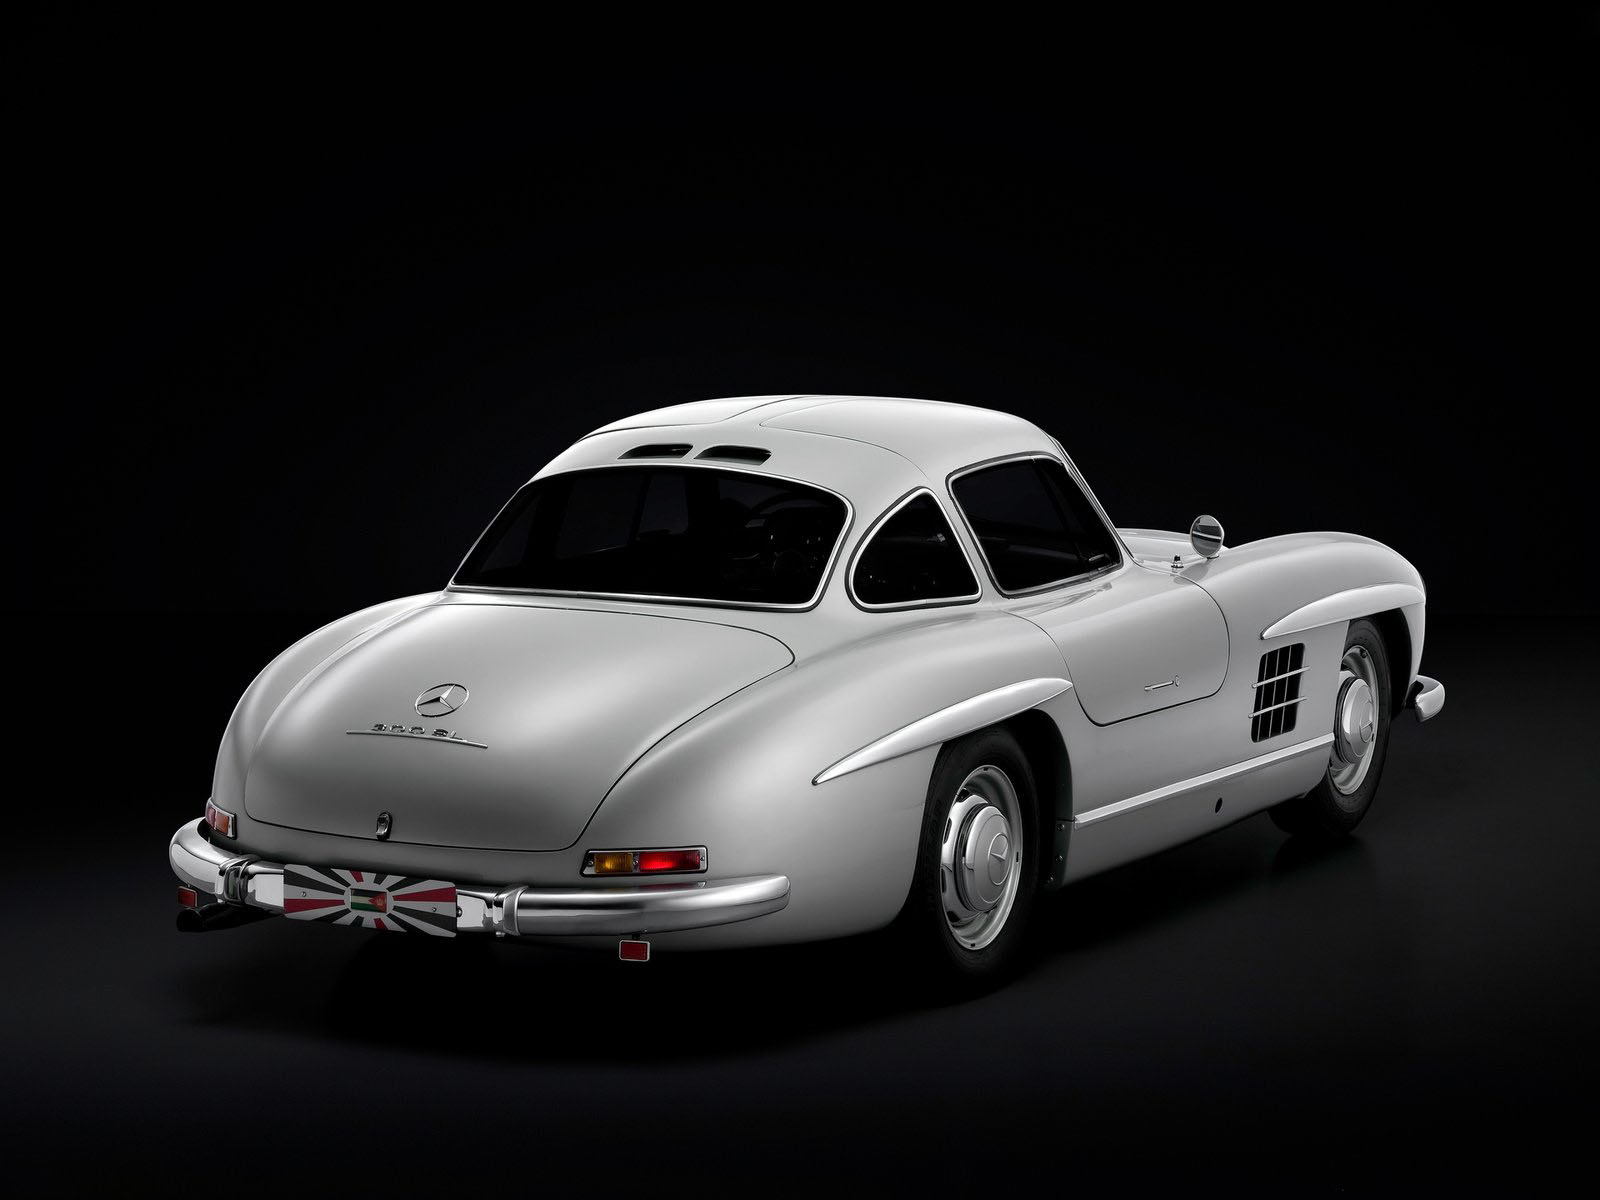 The Legends of Automobile-ตอนที่ 42 ต้นกำเนิดรถยนต์มาจากเกวียน 3 ล้อสืบ ...